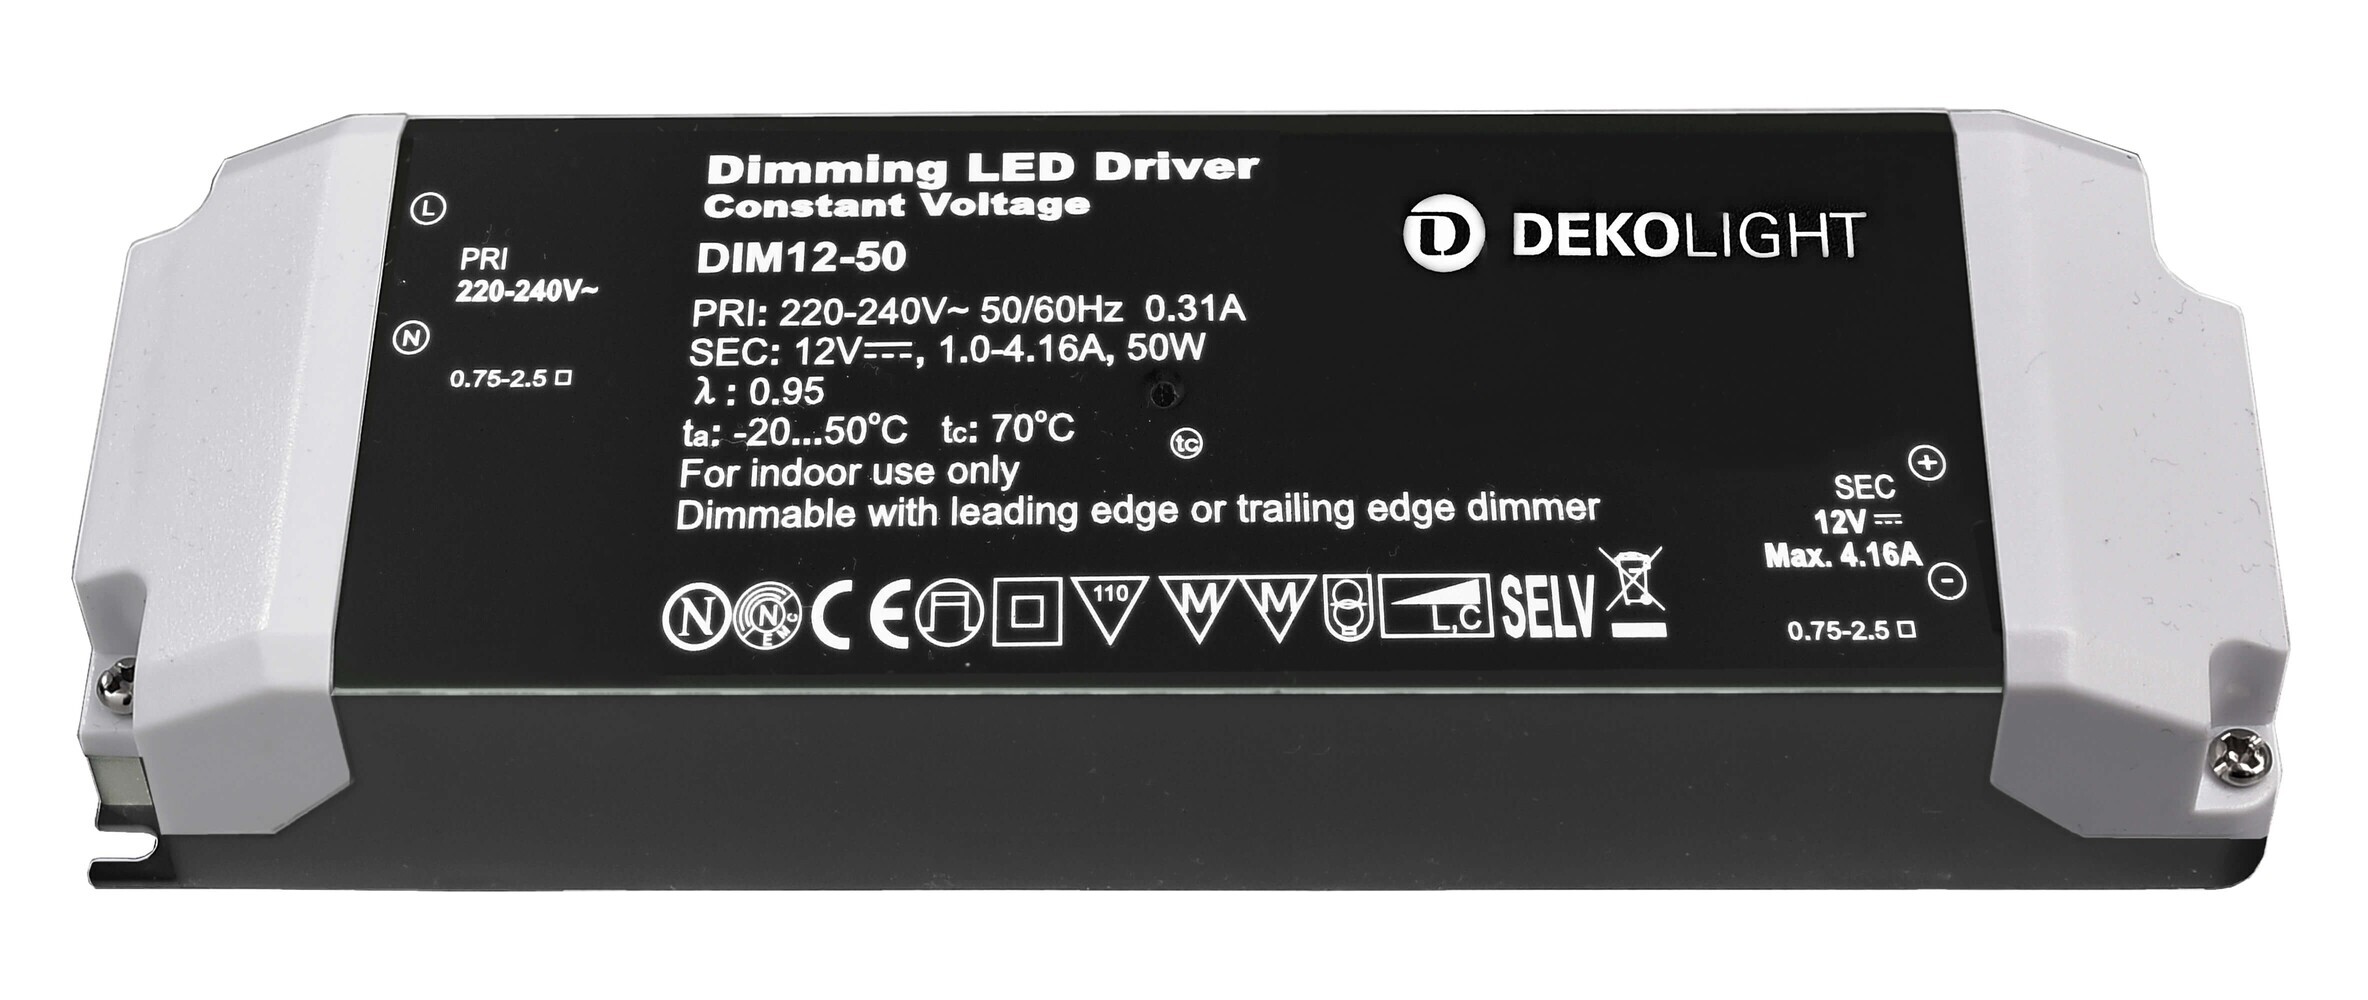 Hochwertiges, dimmbares LED-Netzteil von Deko-Light, in einem eleganten Design